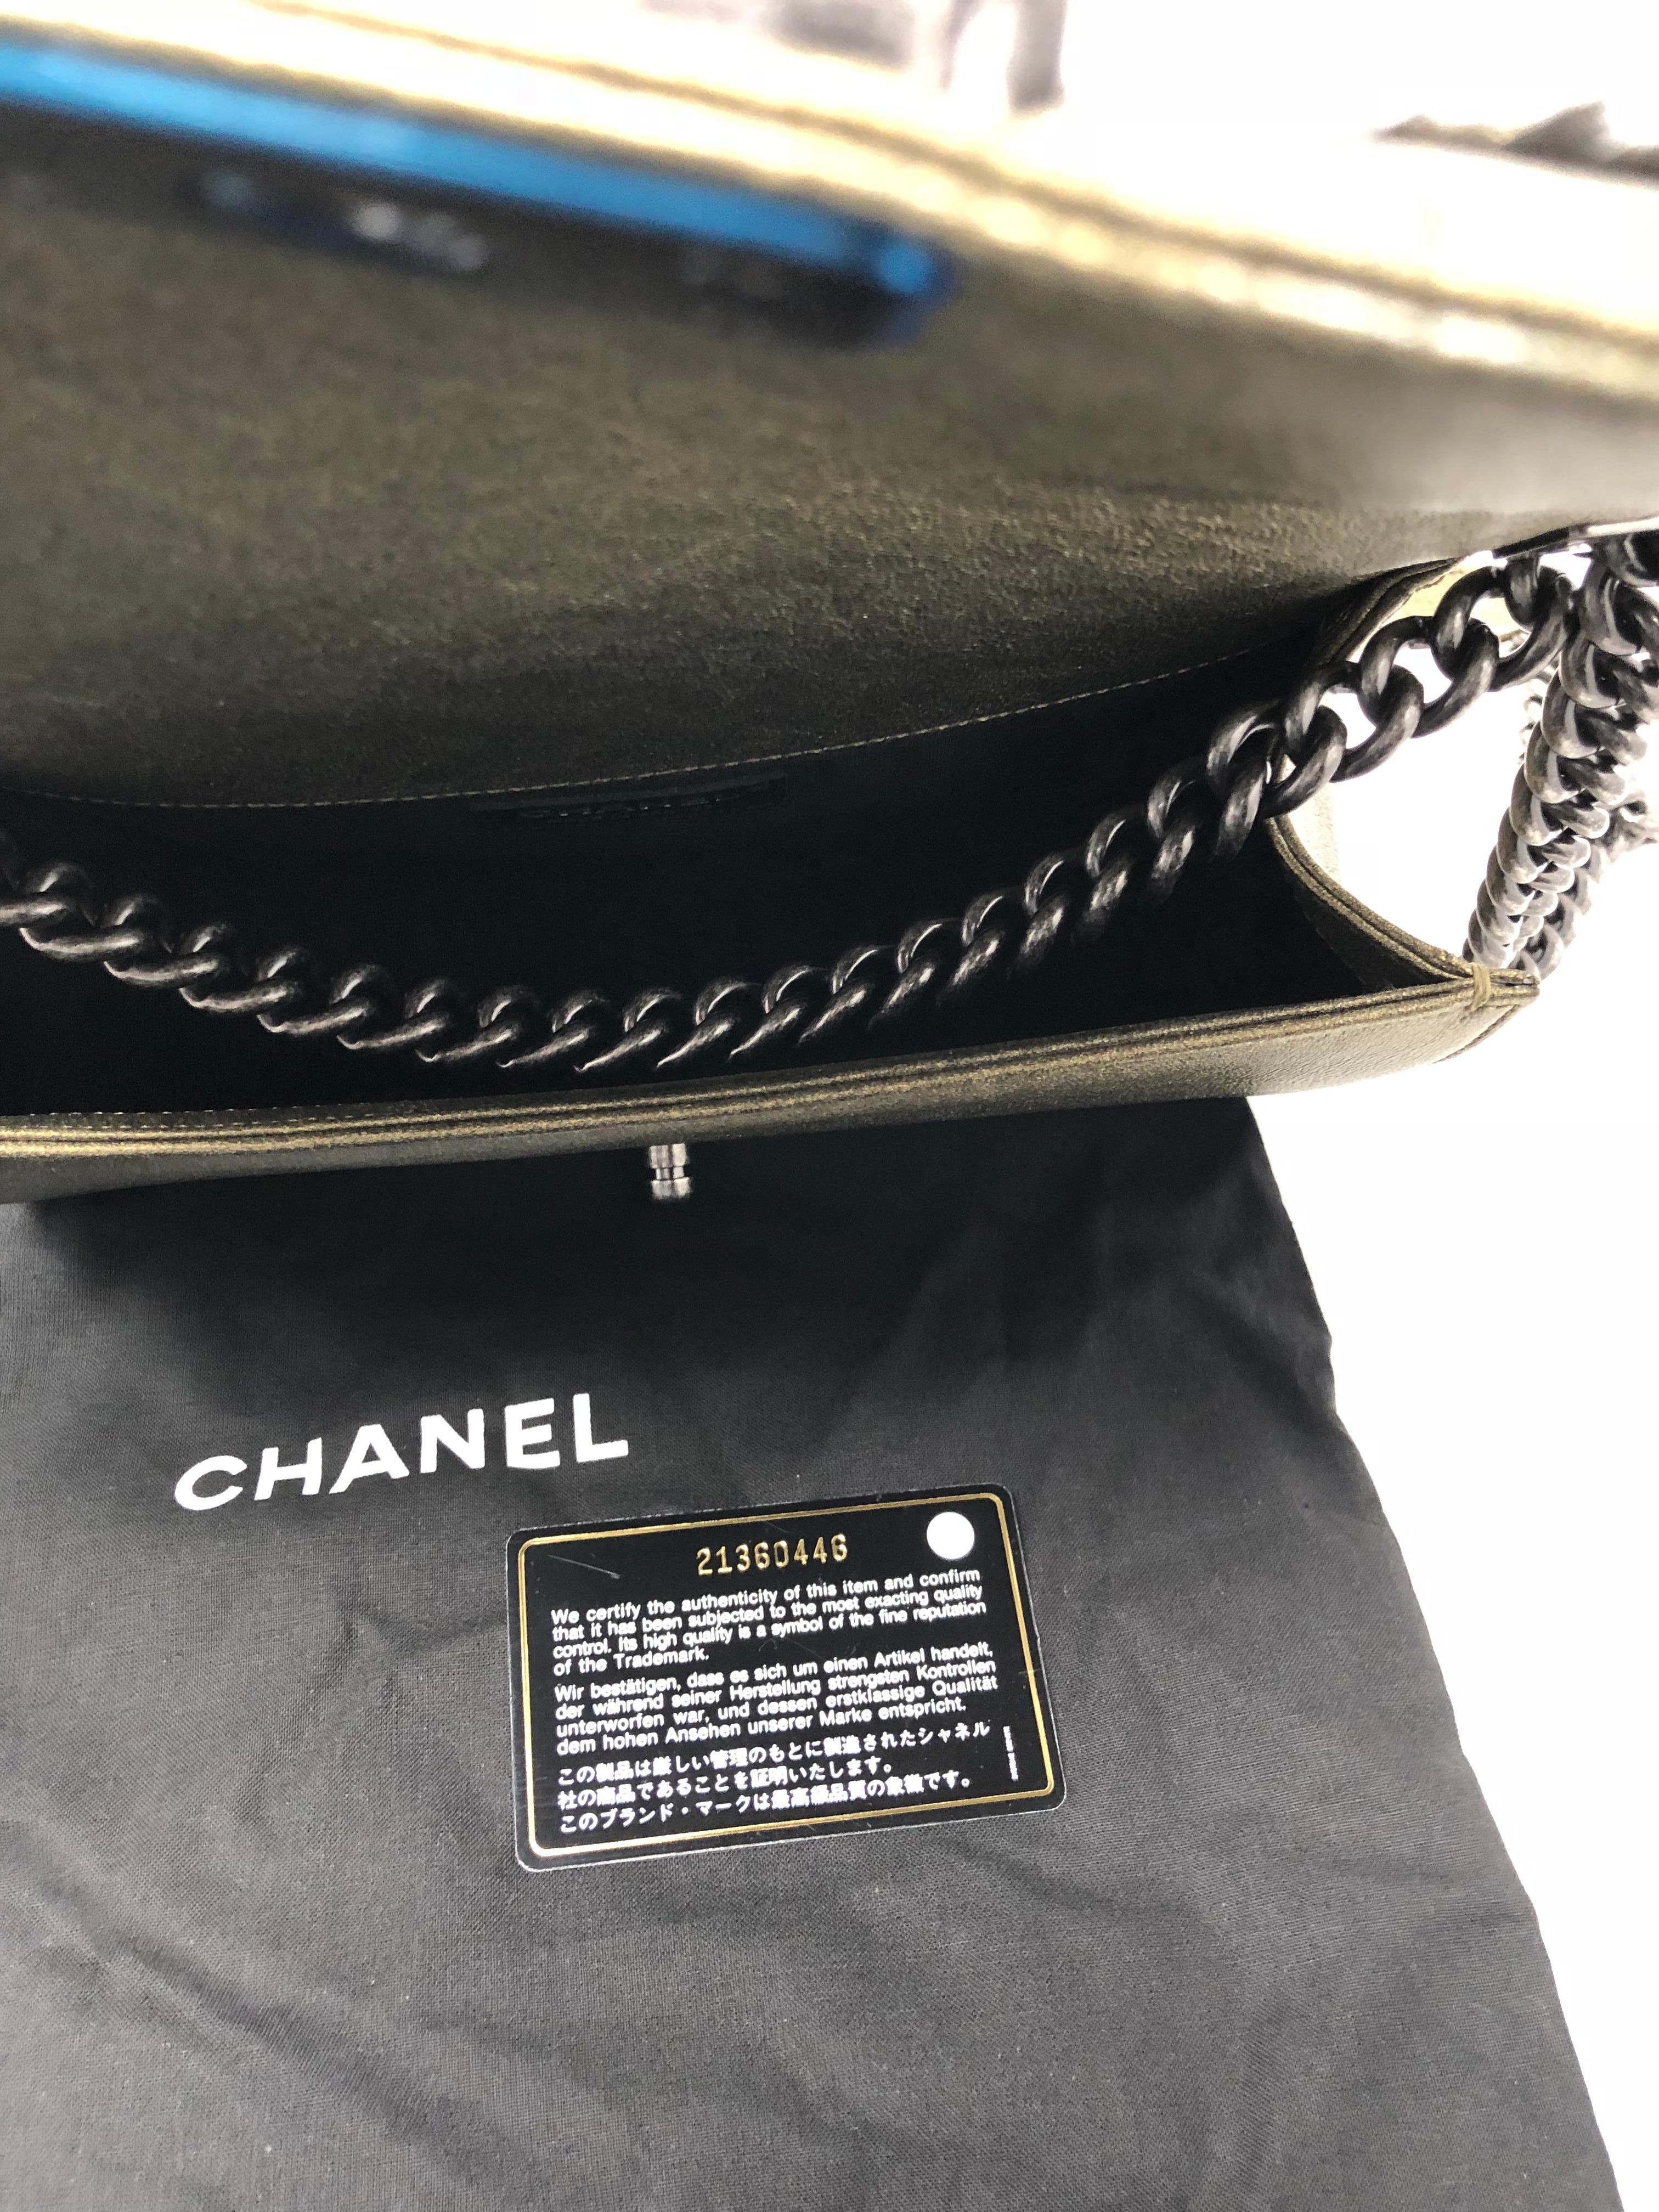 Chanel Gold Boy Flapbag Fur 11